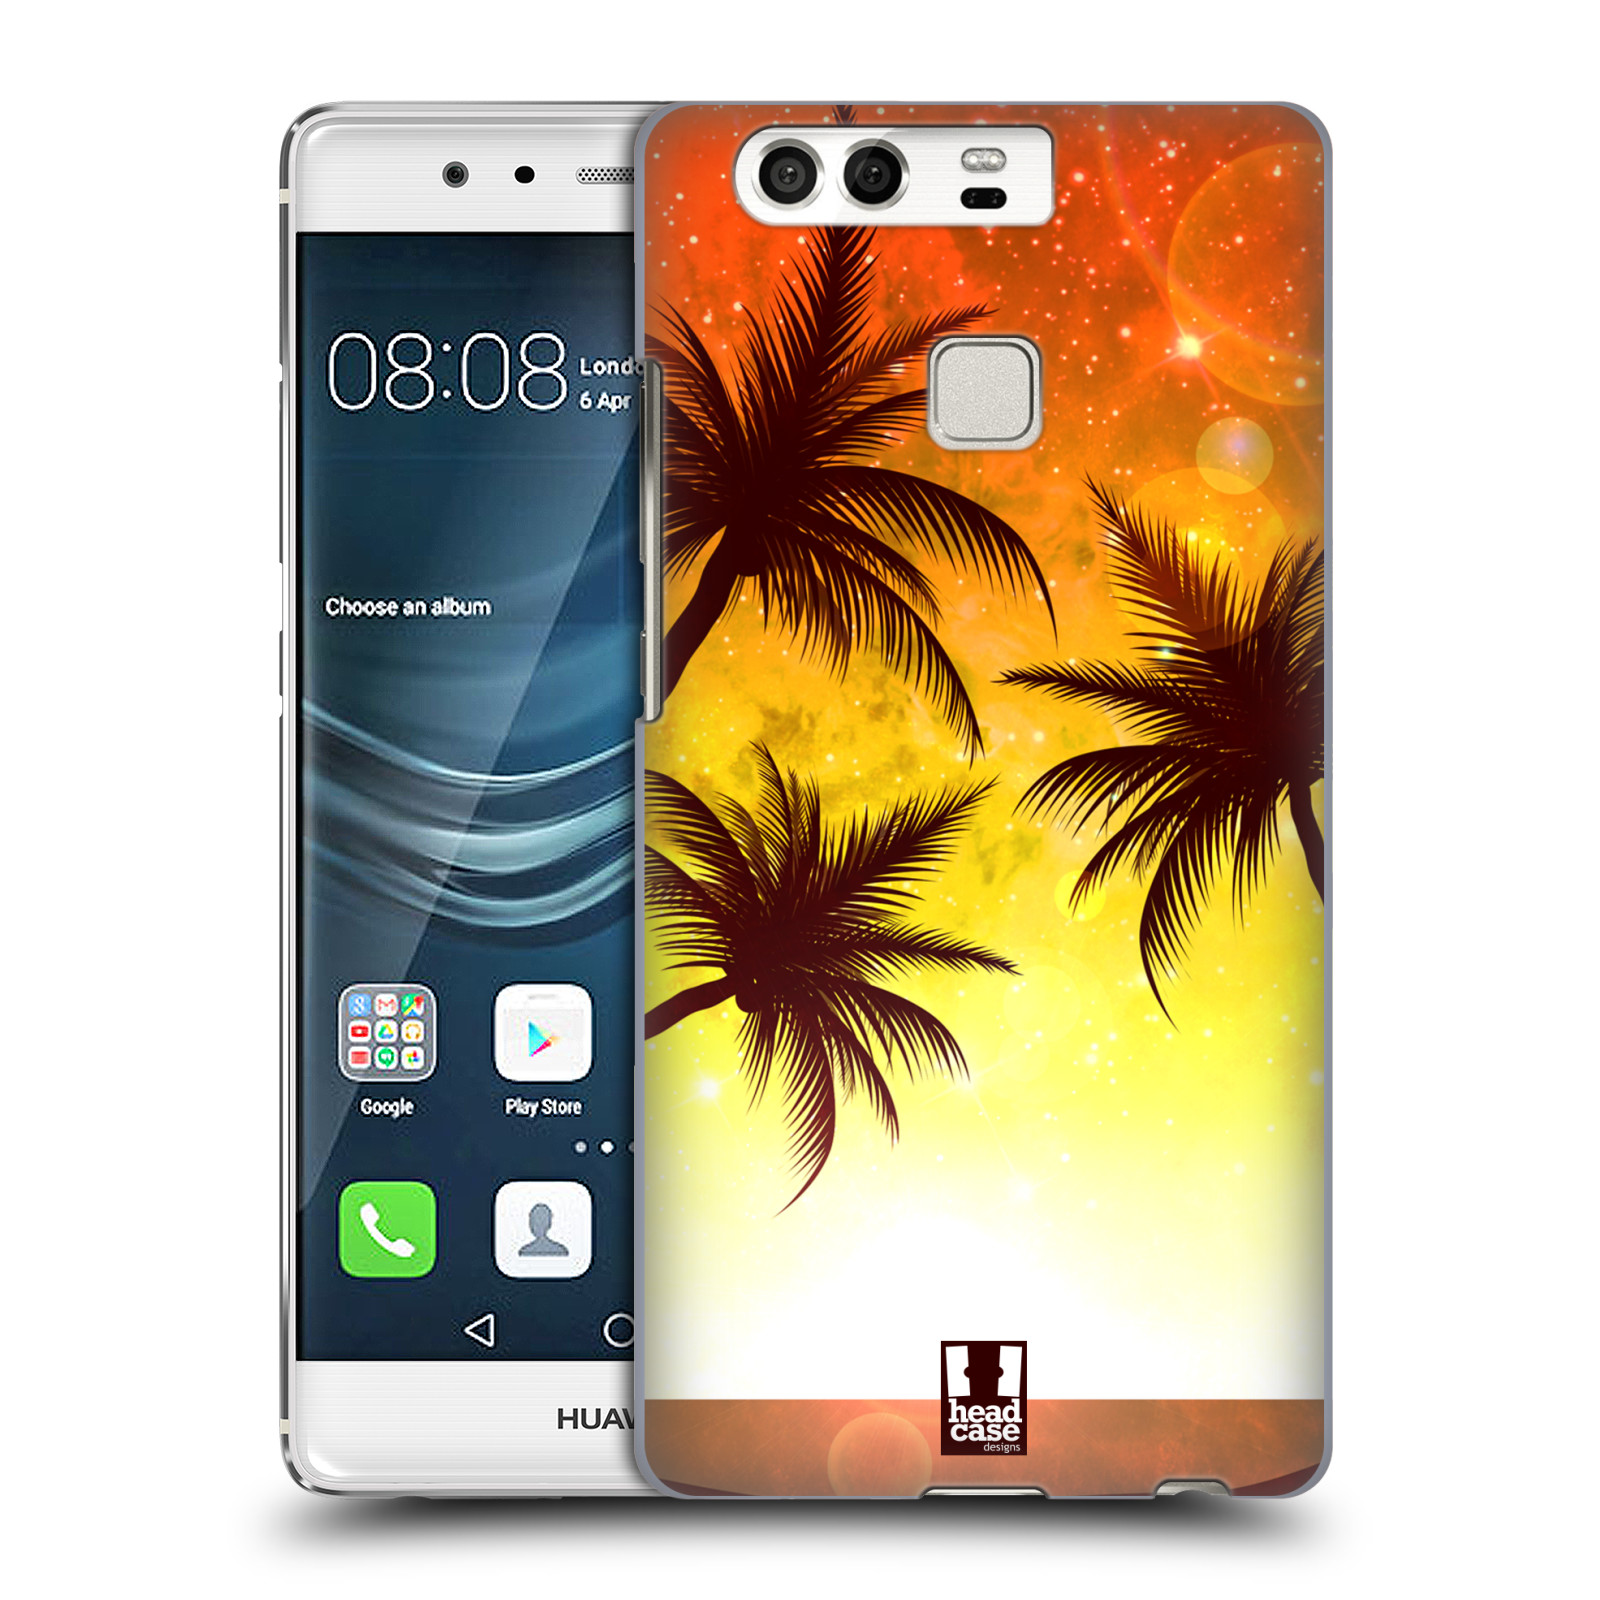 HEAD CASE plastový obal na mobil Huawei P9 / P9 DUAL SIM vzor Kreslený motiv silueta moře a palmy ORANŽOVÁ